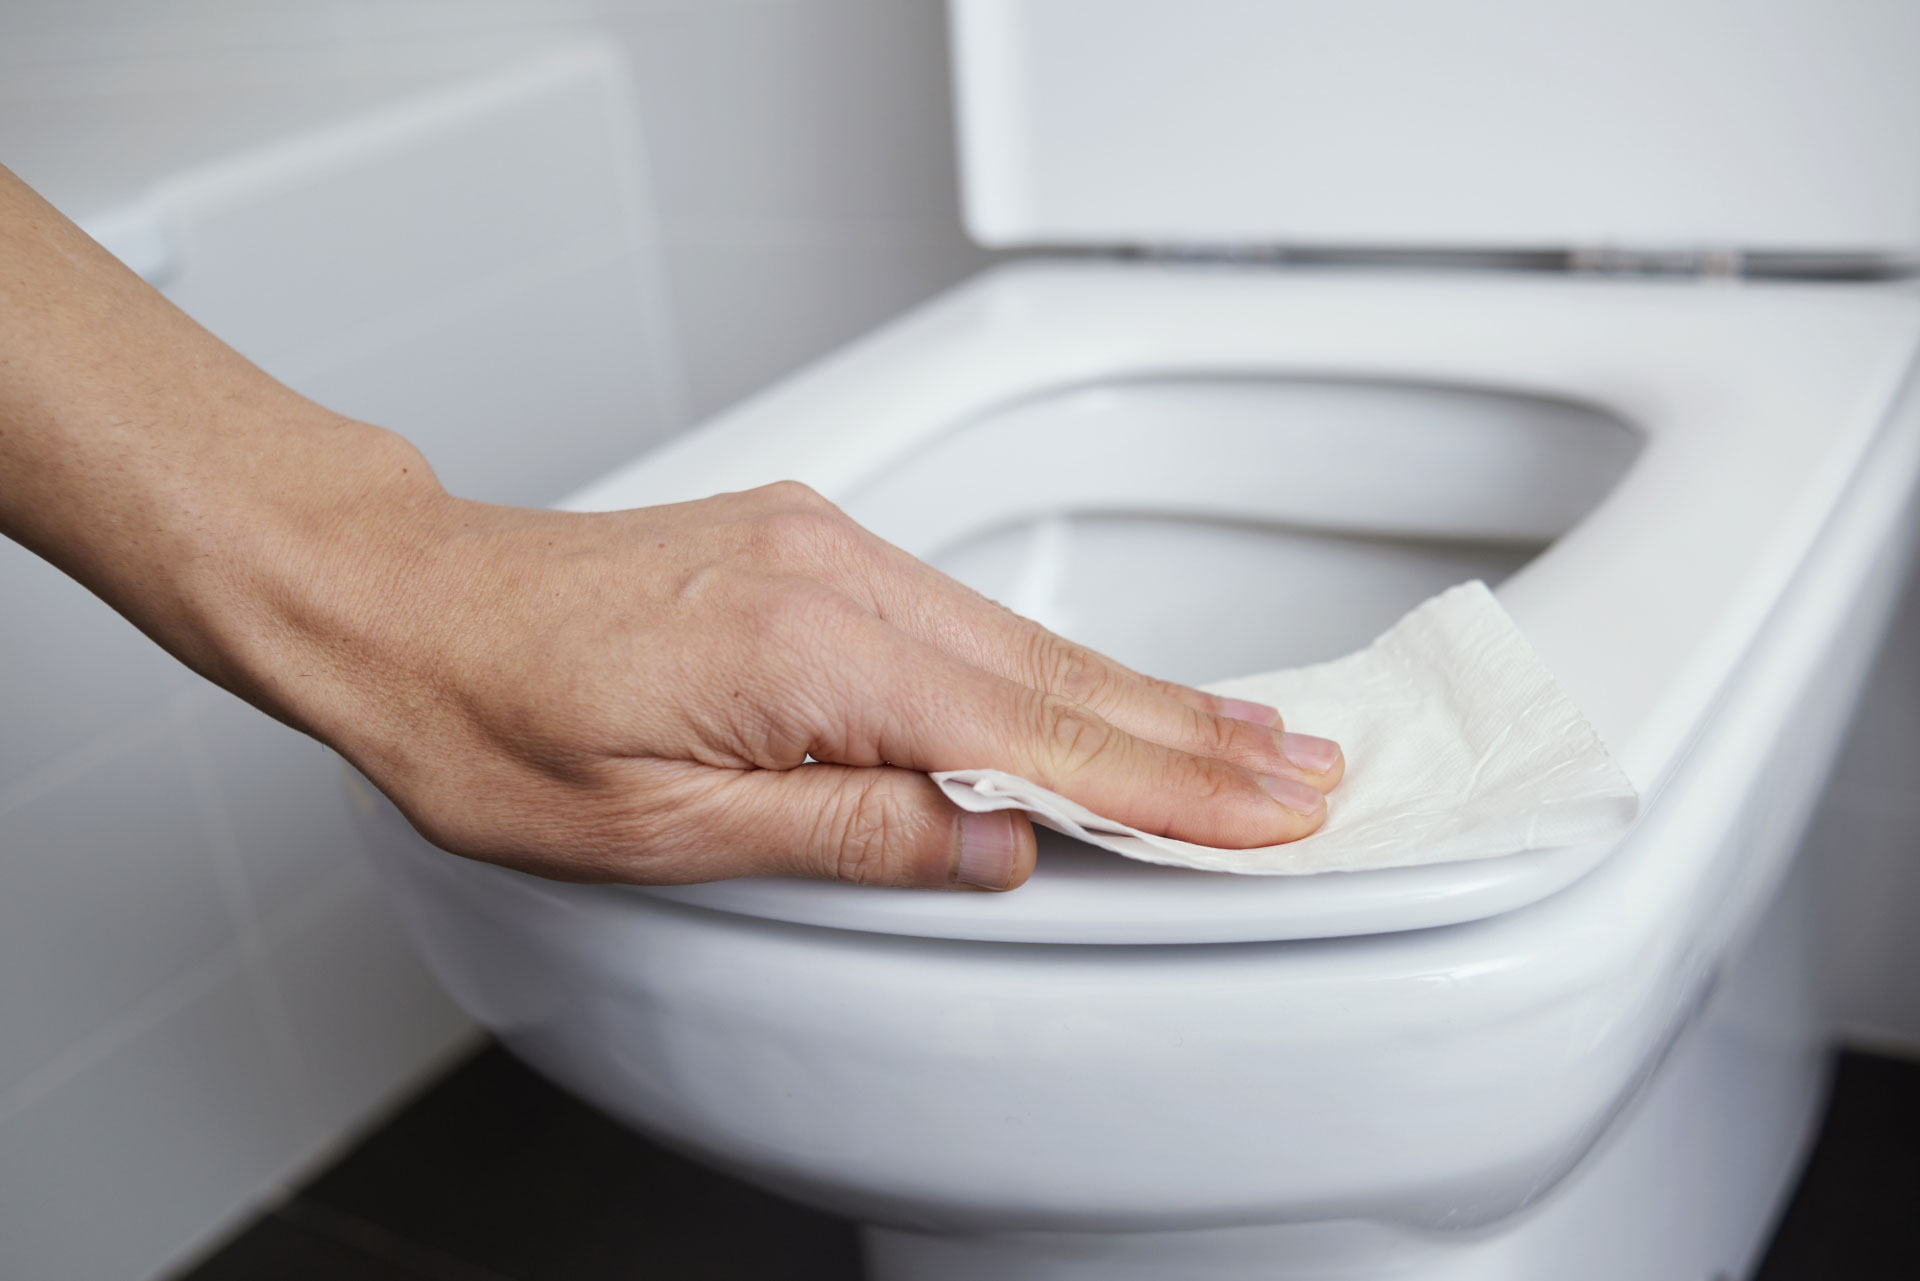 Nettoyer la cuvette des toilettes, notamment celles publiques, permet de limiter une potentielle contamination par le SARS-CoV-2. © nito, Adobe Stock